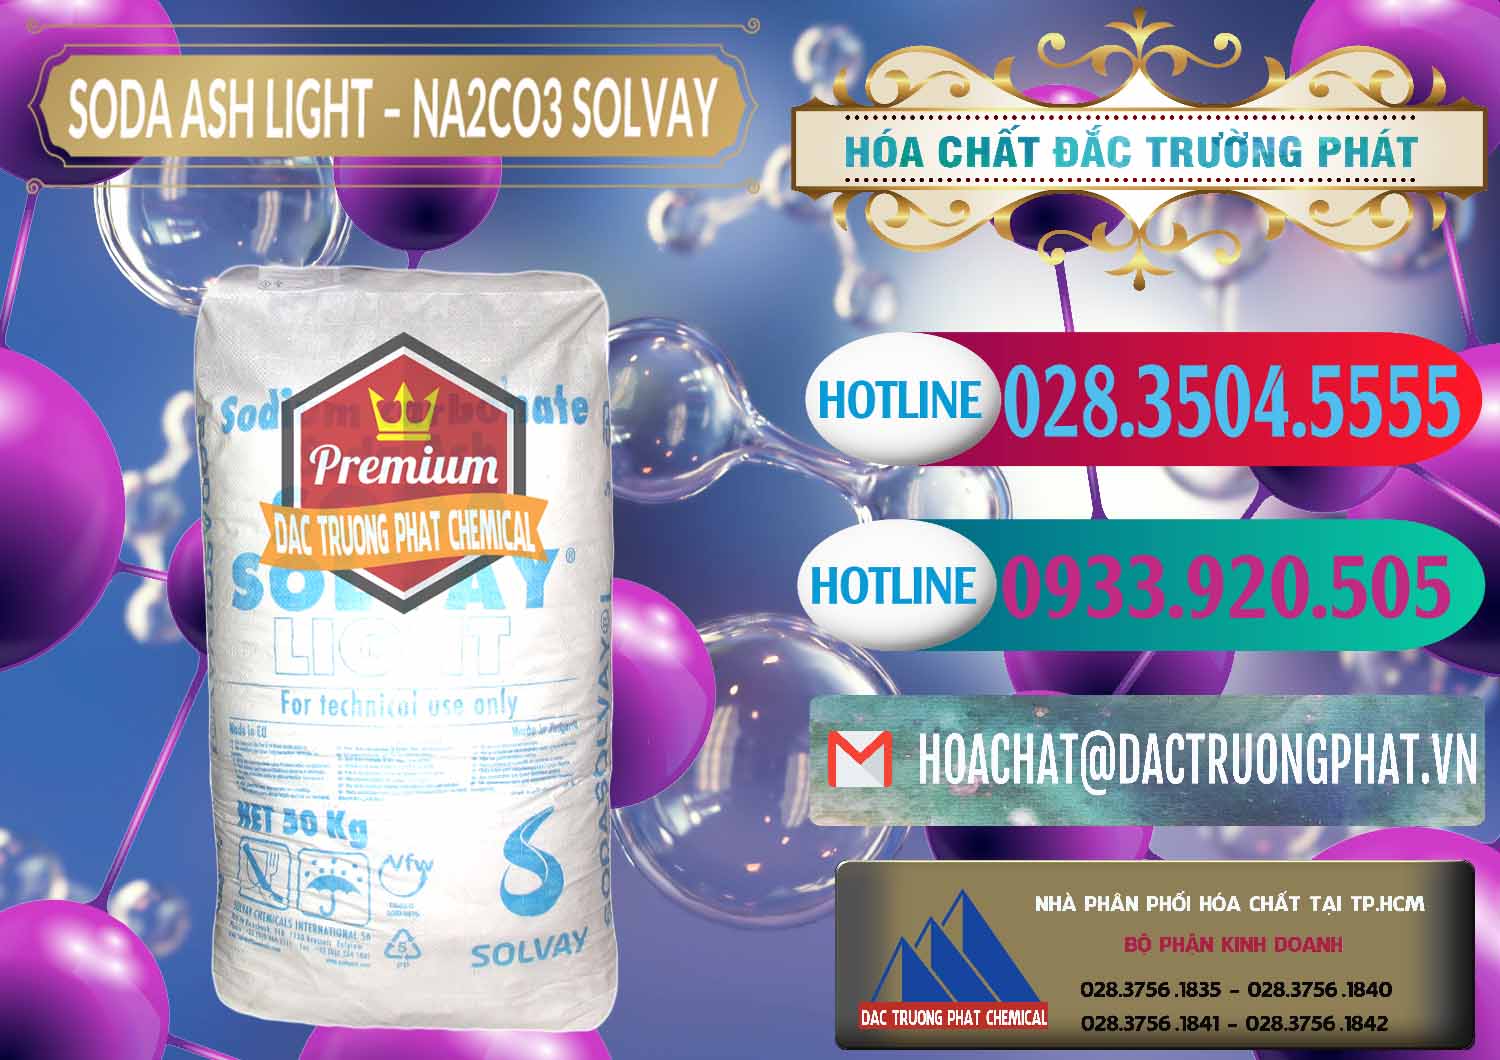 Cty chuyên kinh doanh - bán Soda Ash Light - NA2CO3 Solvay Bulgaria - 0126 - Cty chuyên cung cấp và kinh doanh hóa chất tại TP.HCM - truongphat.vn